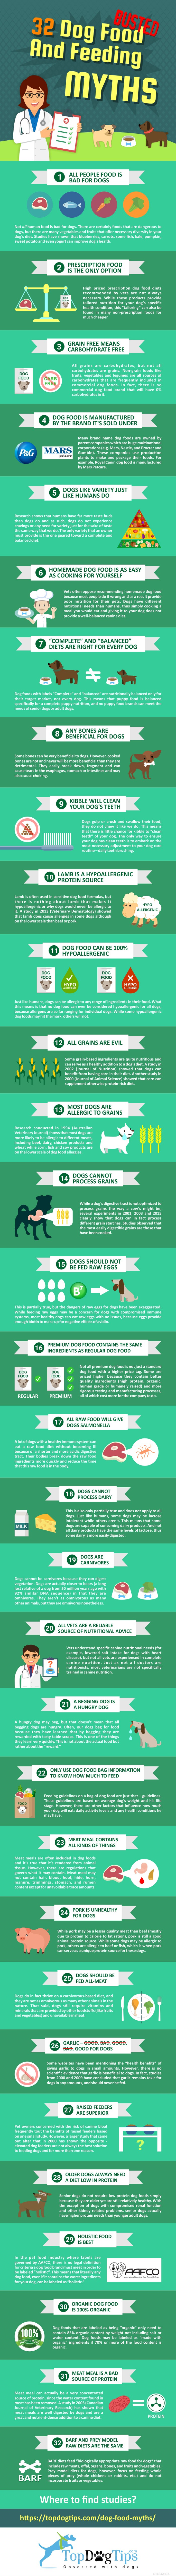 31 mythes sur la nourriture et l alimentation des chiens démystifiés [Infographie]